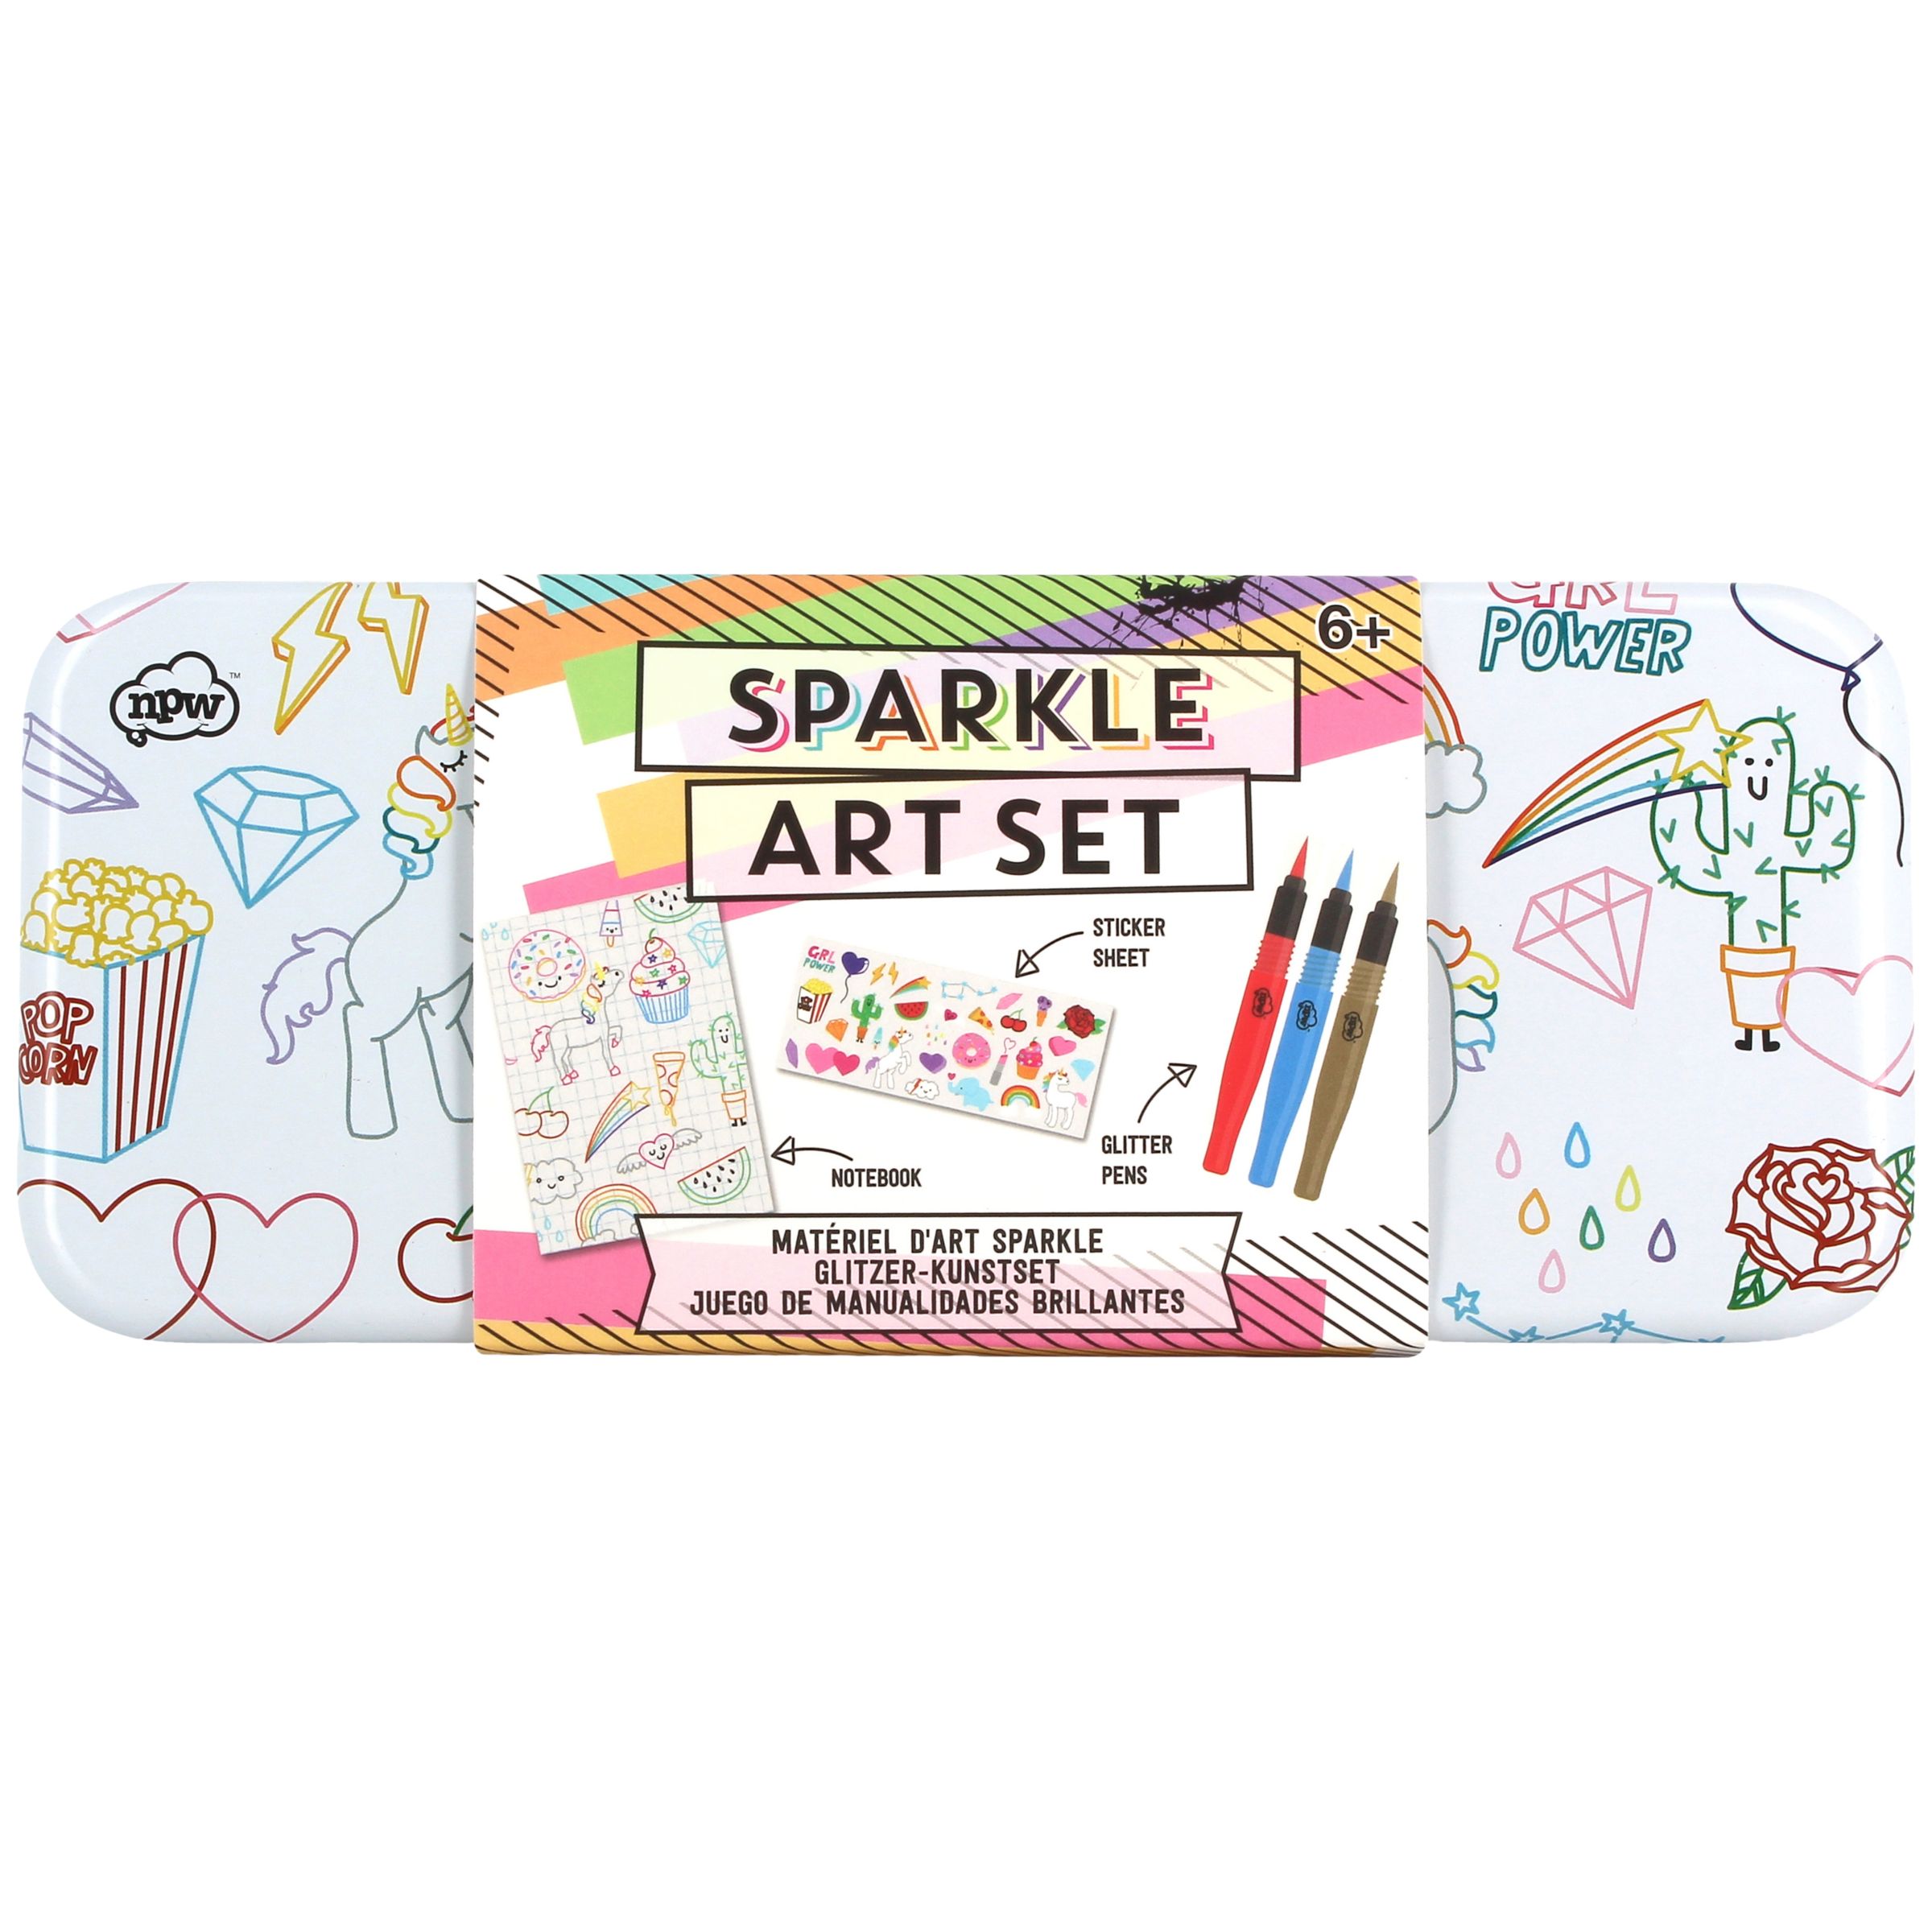 NPW Children's Sparkle Art Set